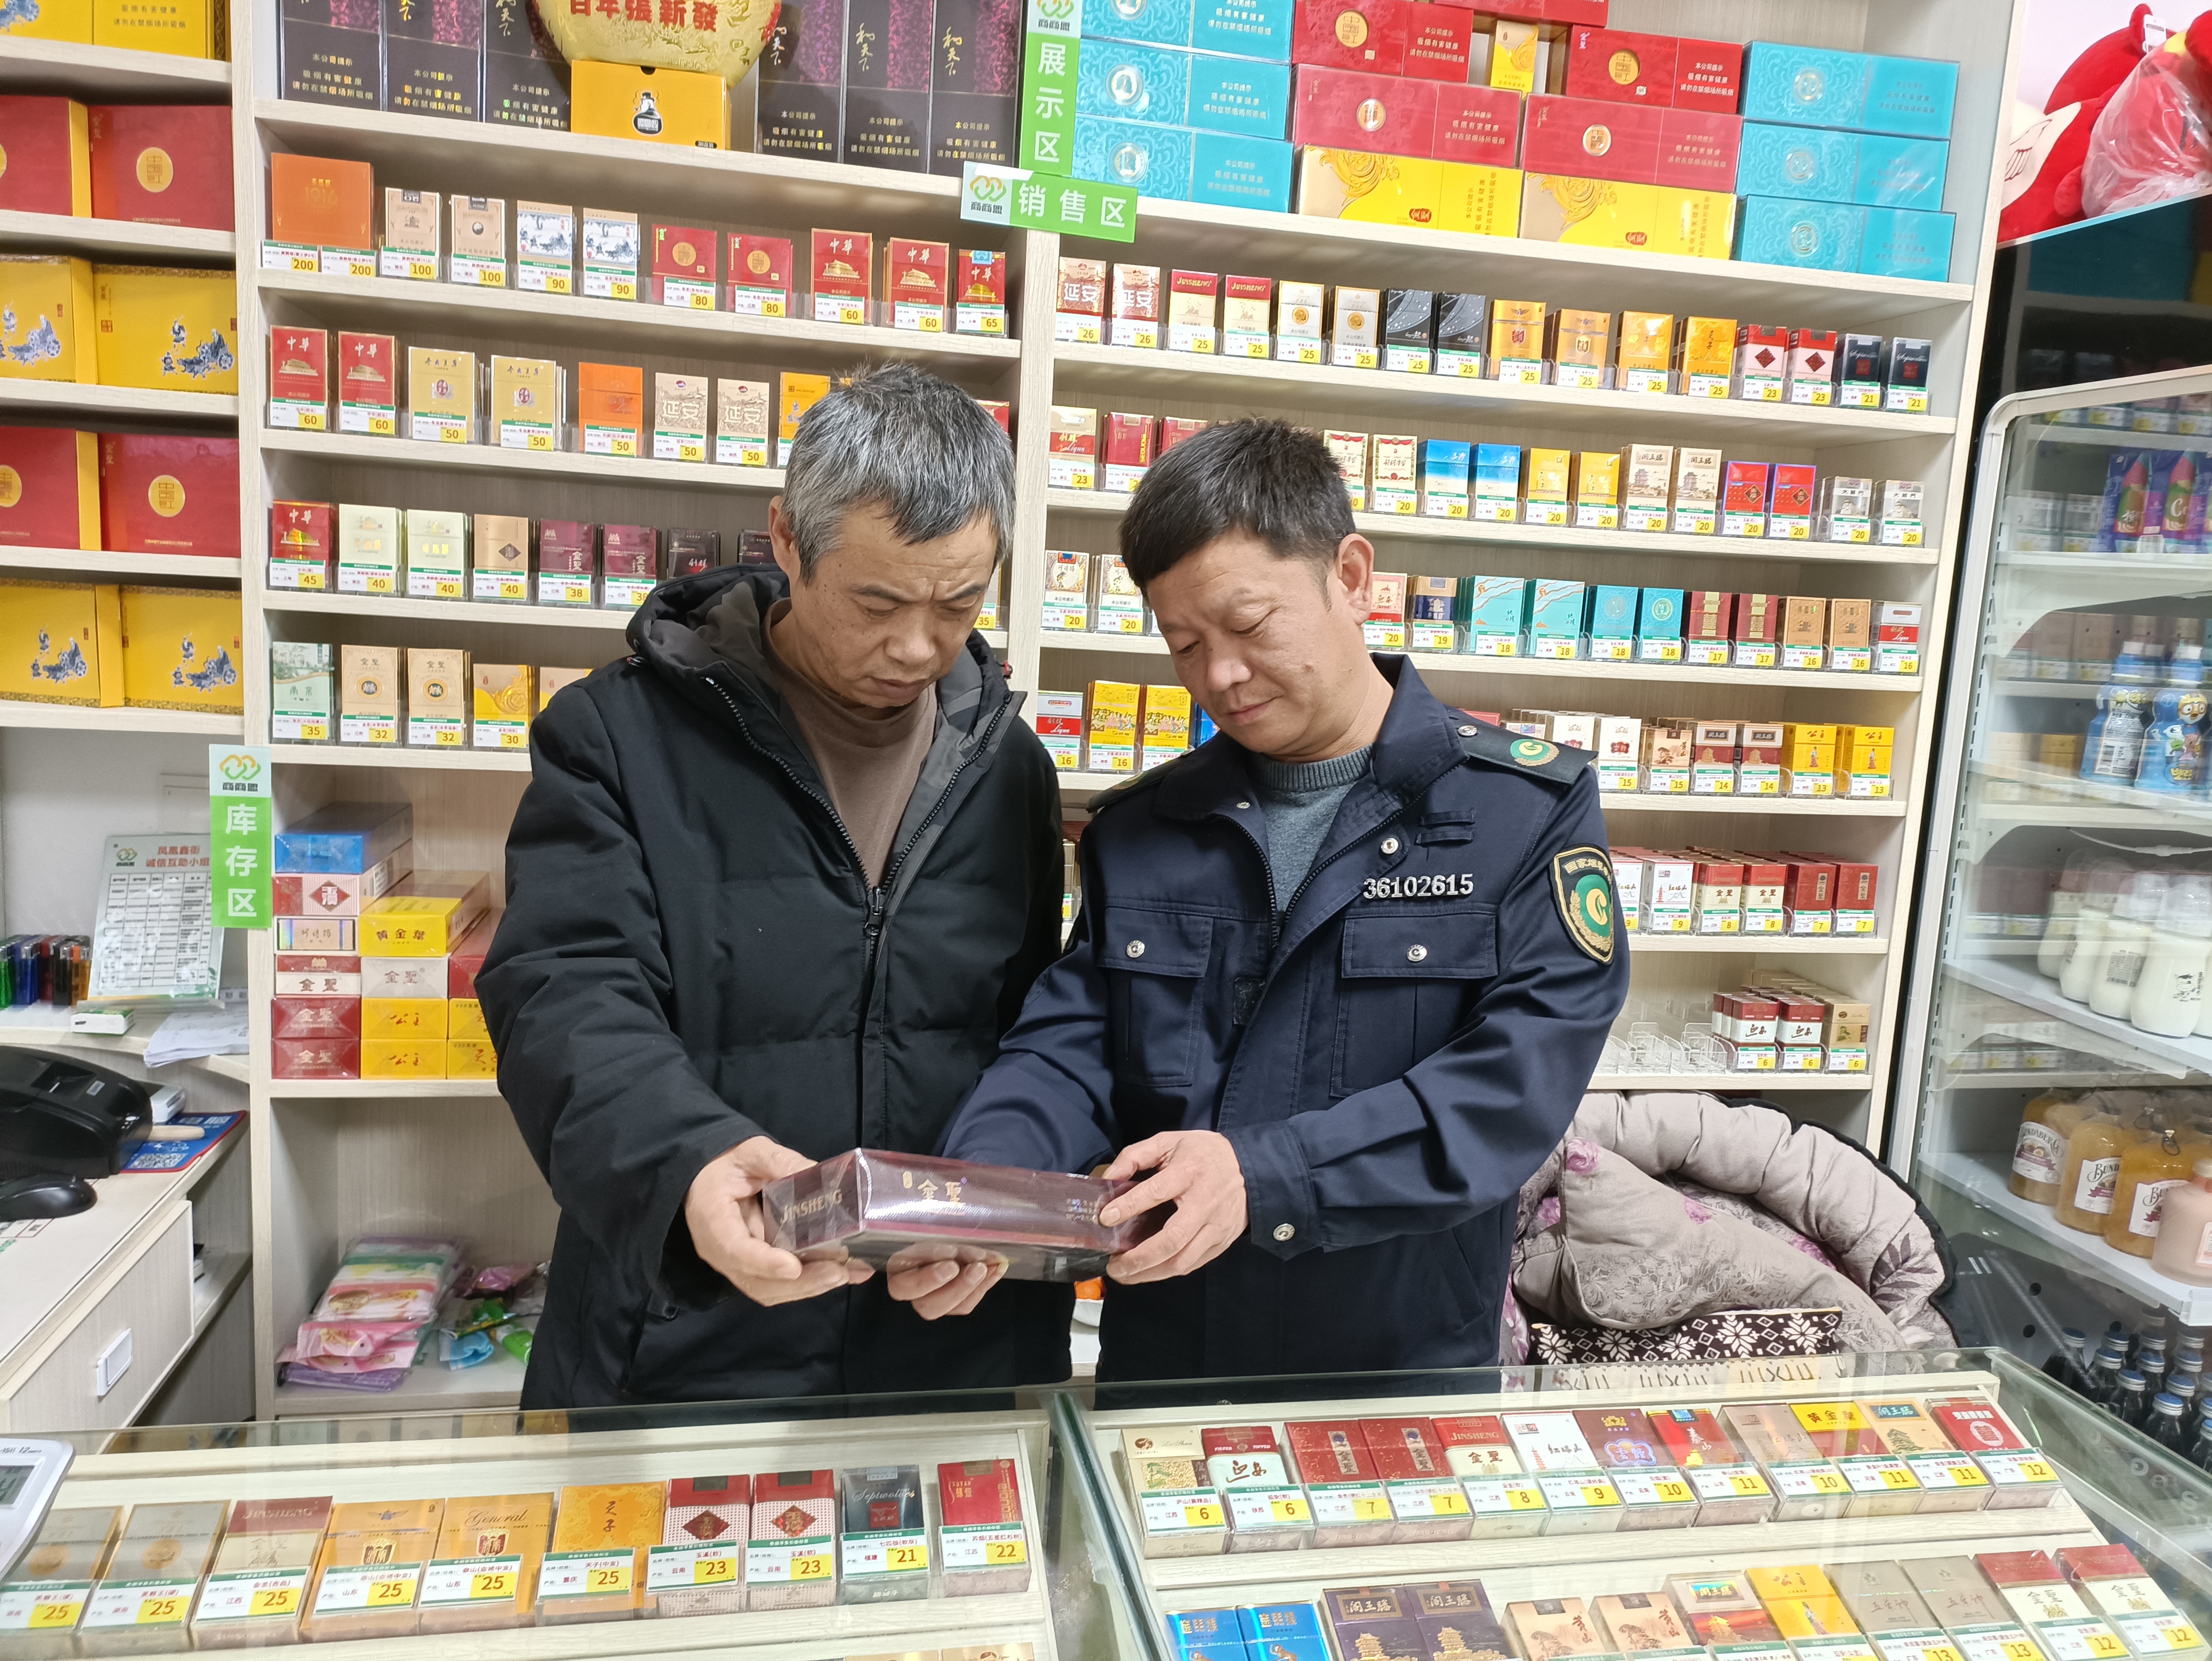 临近春节,针对涉烟违法行为问题,宜黄县烟草专卖局要求专卖人员通过